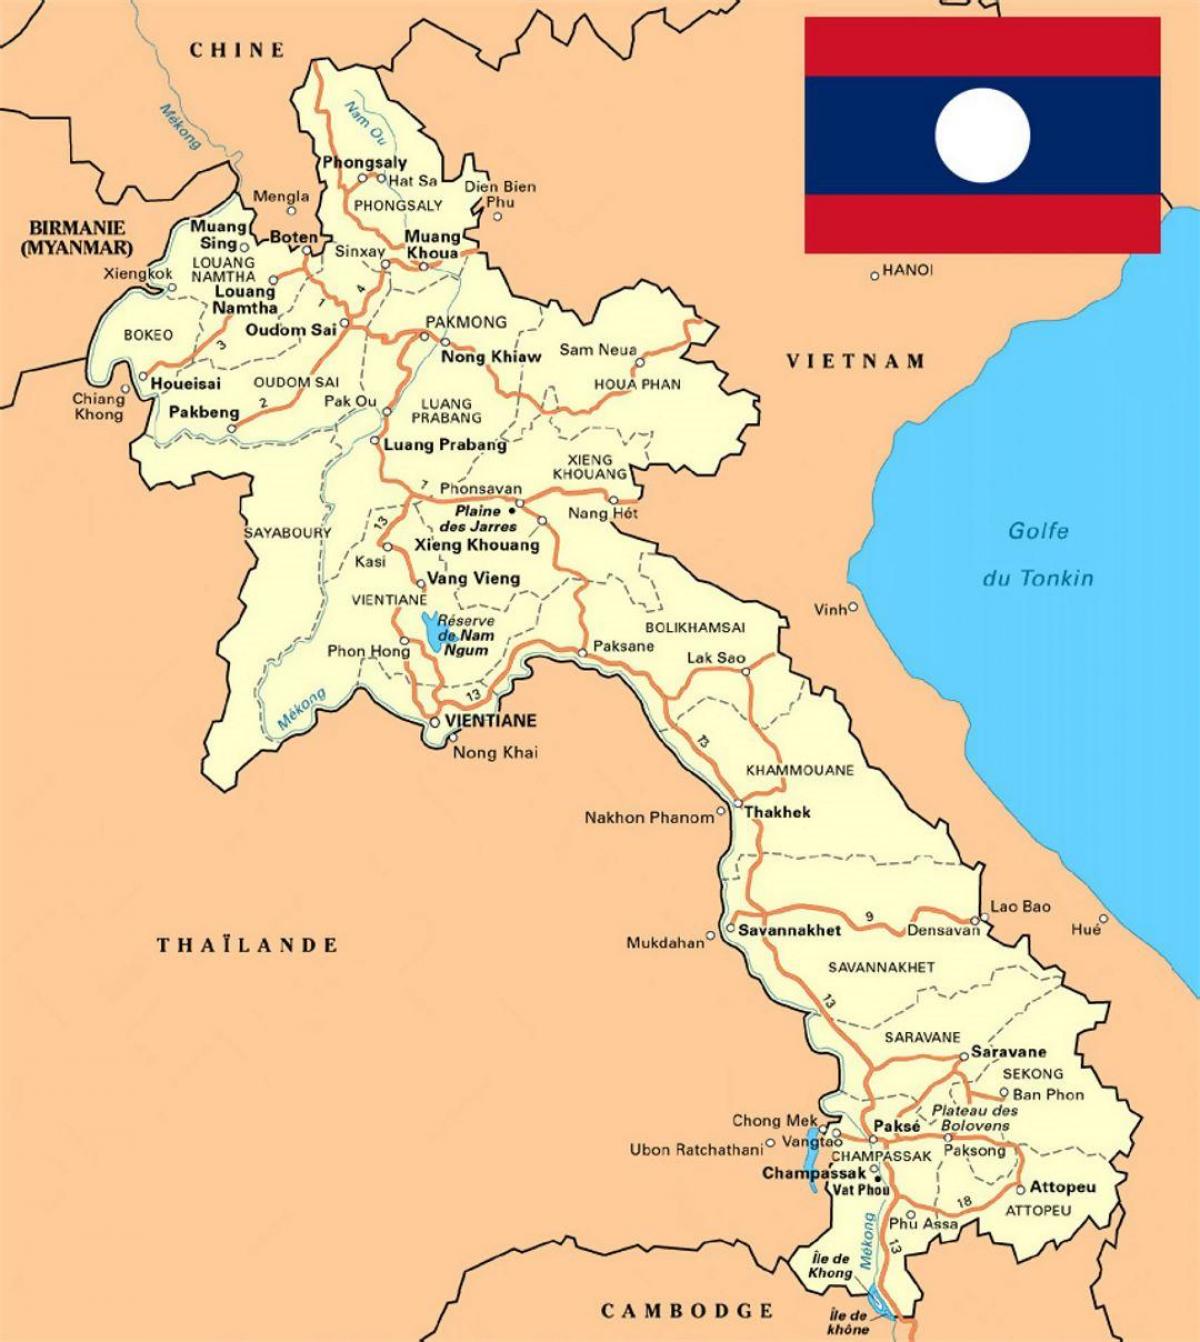 mapa detalhado do laos